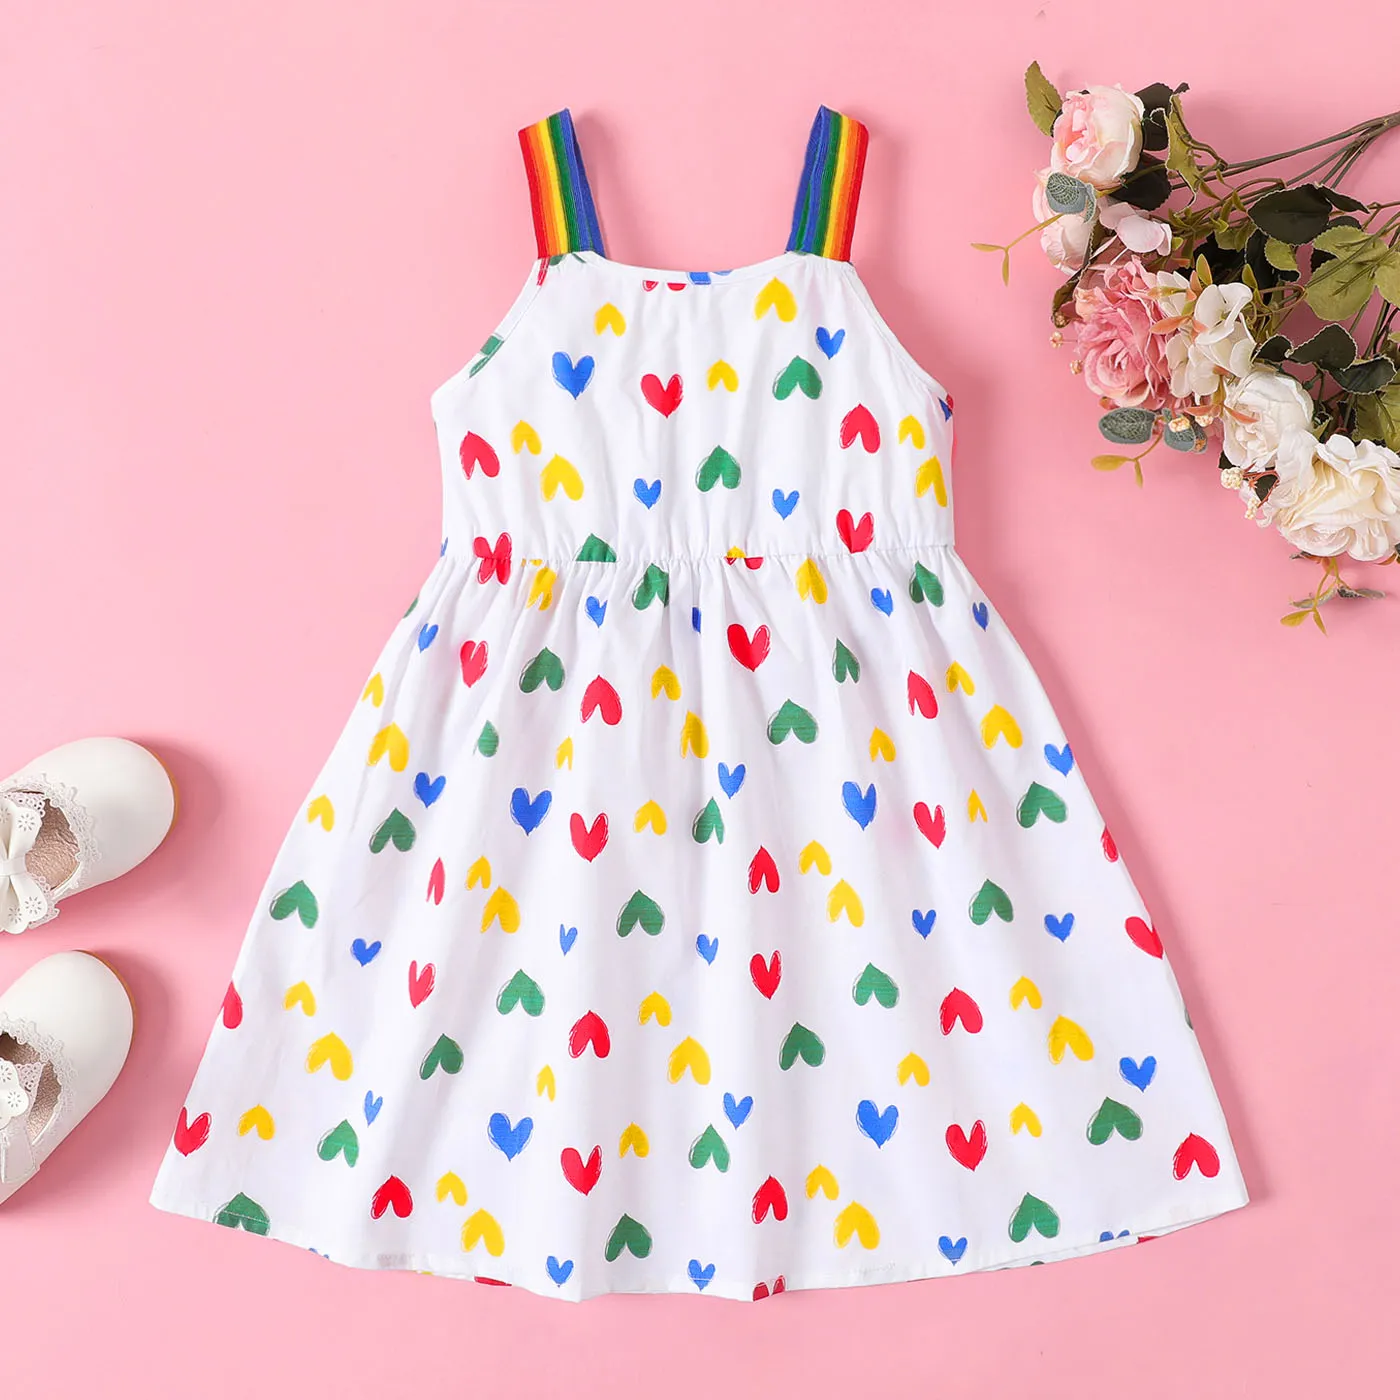 Toddler Girl 100% Coton Allover Heart Print Rainbow Slip Dress